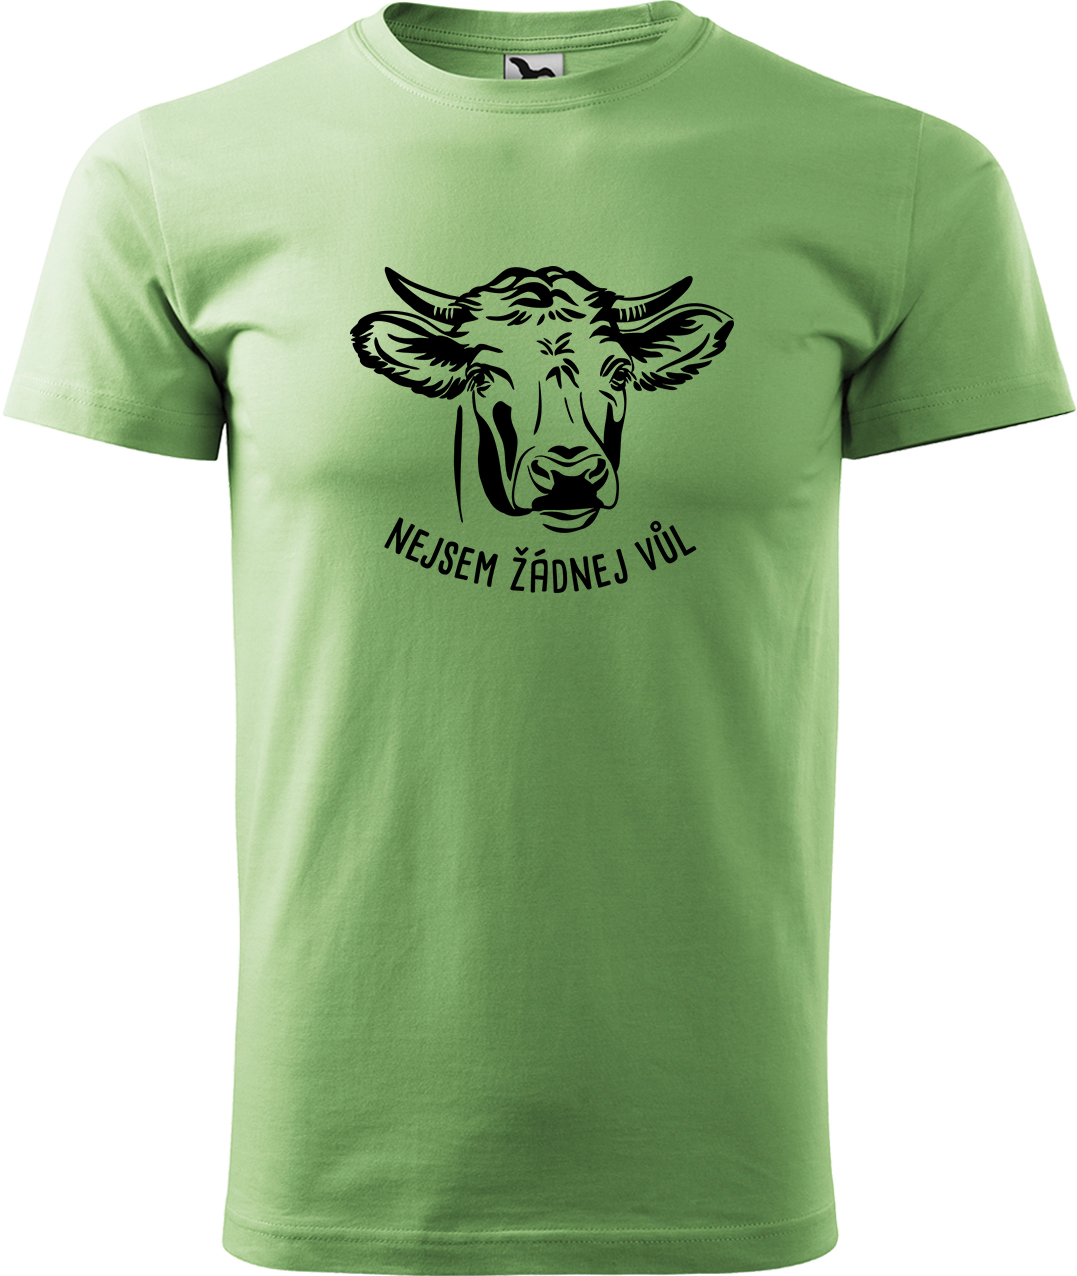 Pánské tričko s krávou - Nejsem žádnej vůl Velikost: 4XL, Barva: Trávově zelená (39), Střih: pánský